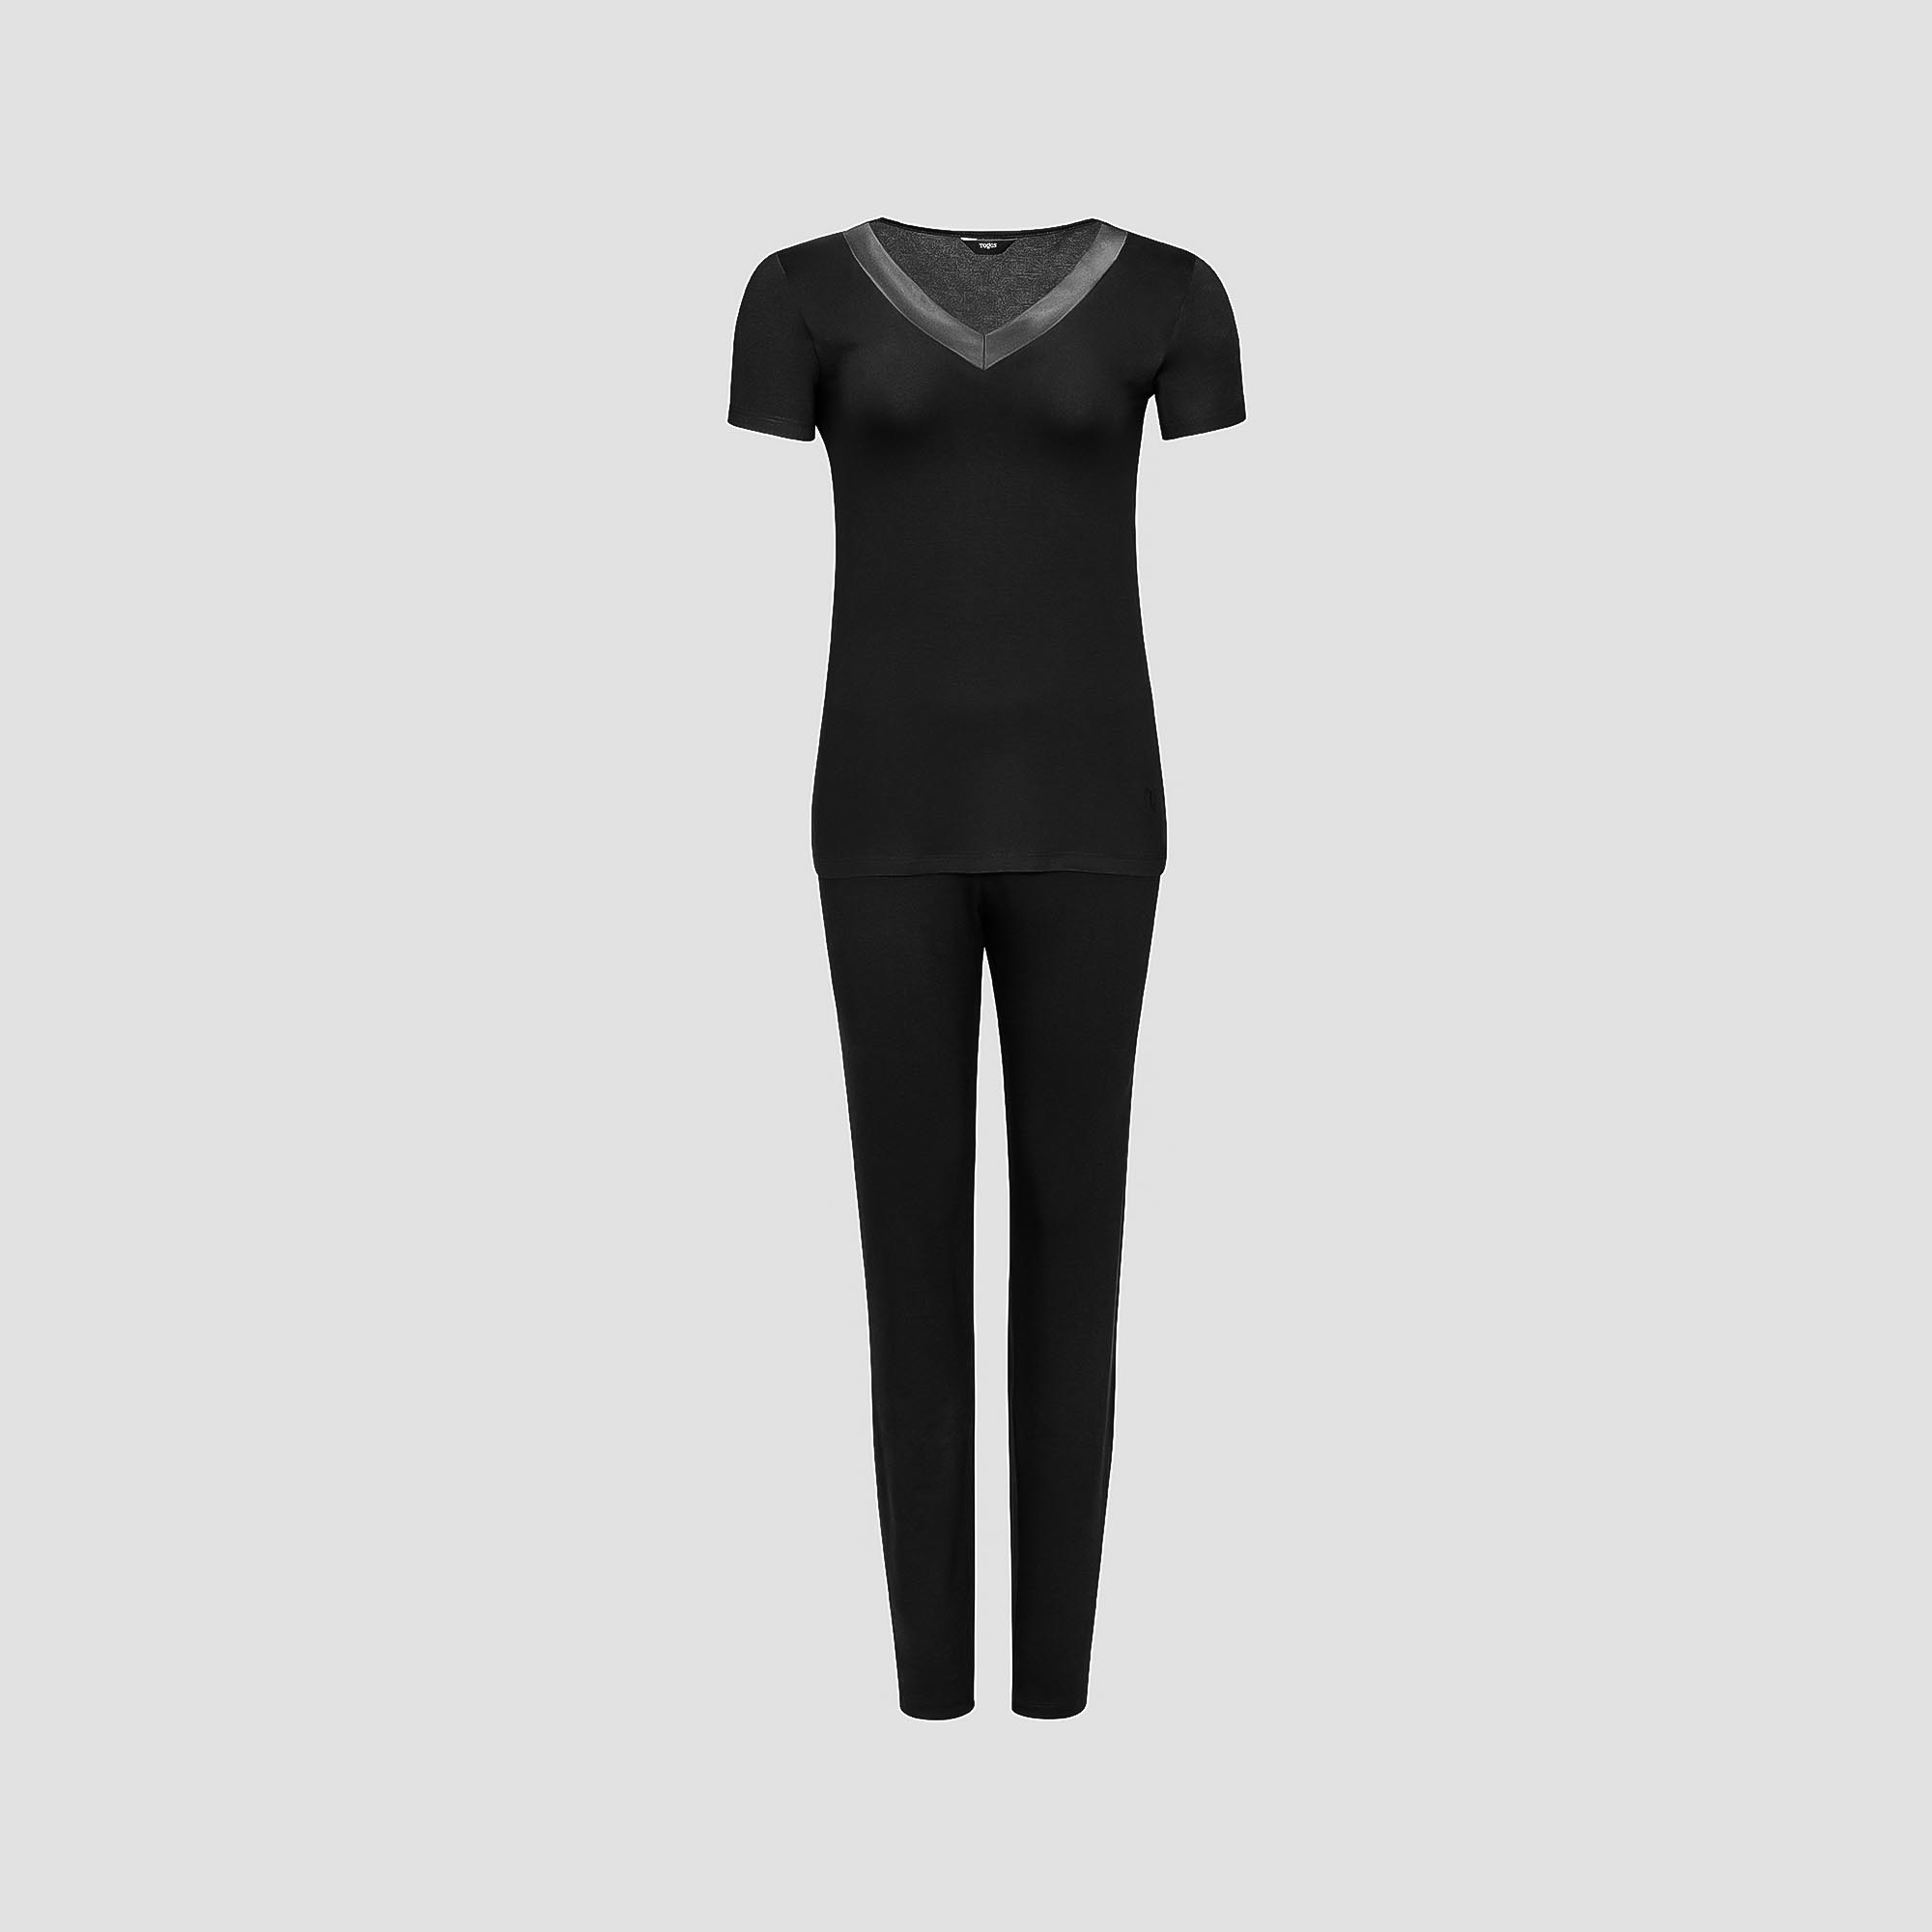 Пижама Togas Ингелла черная женская XXL(52) 2 предмета пижама футболка